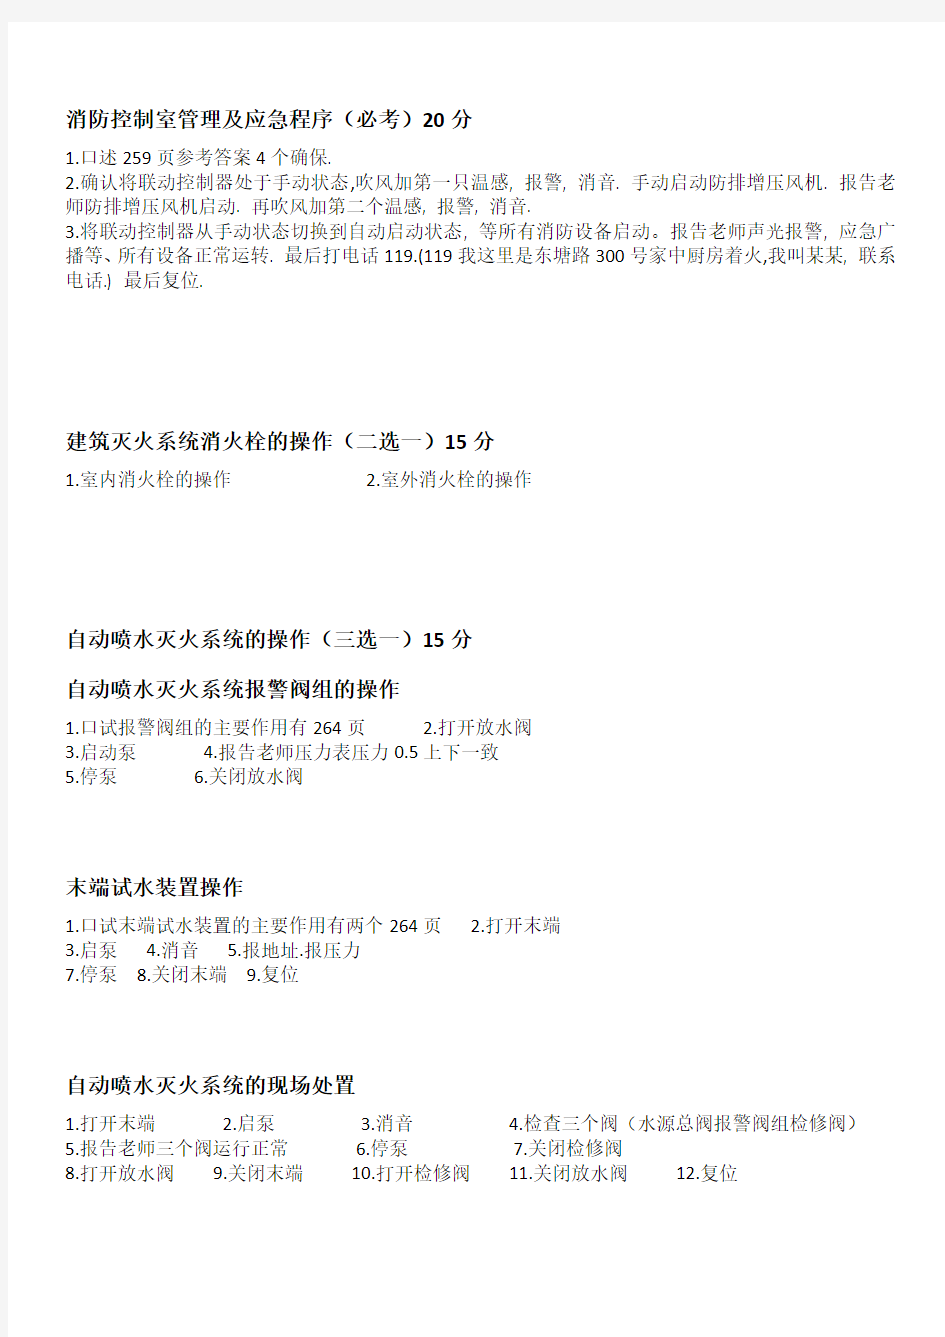 上海市建(构)筑物消防员(五级)技能考核鉴定项目与考试步骤[1]